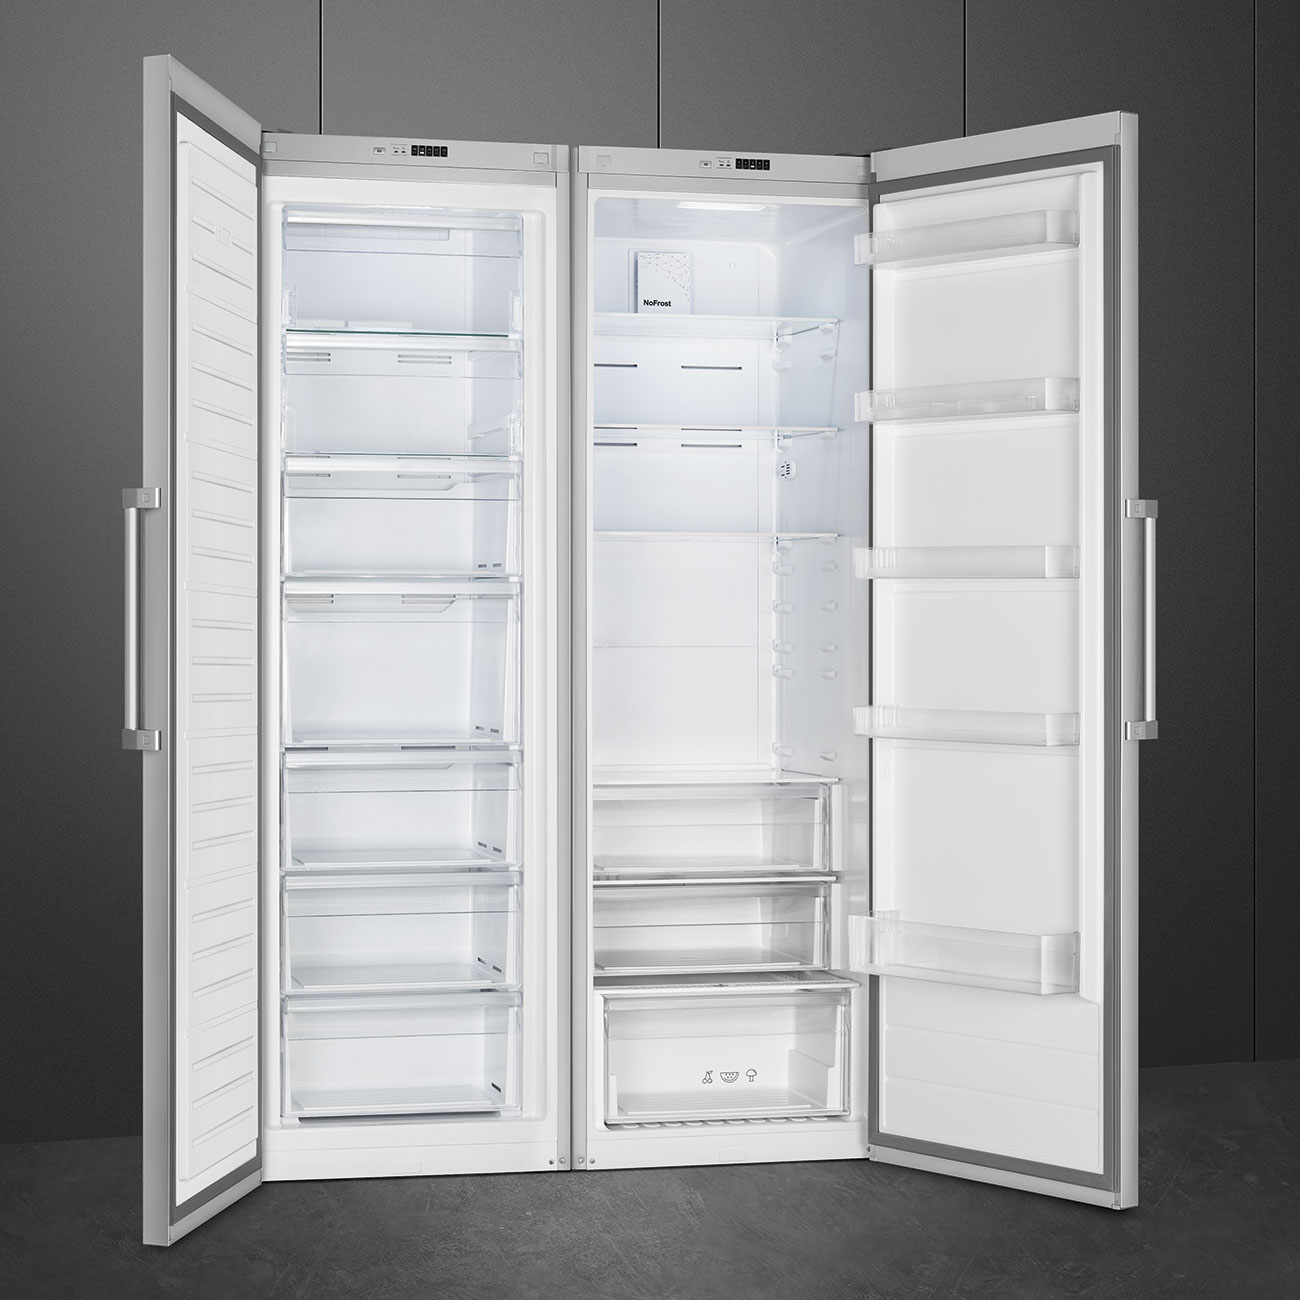 Single door Free Standing freezer- Smeg_3